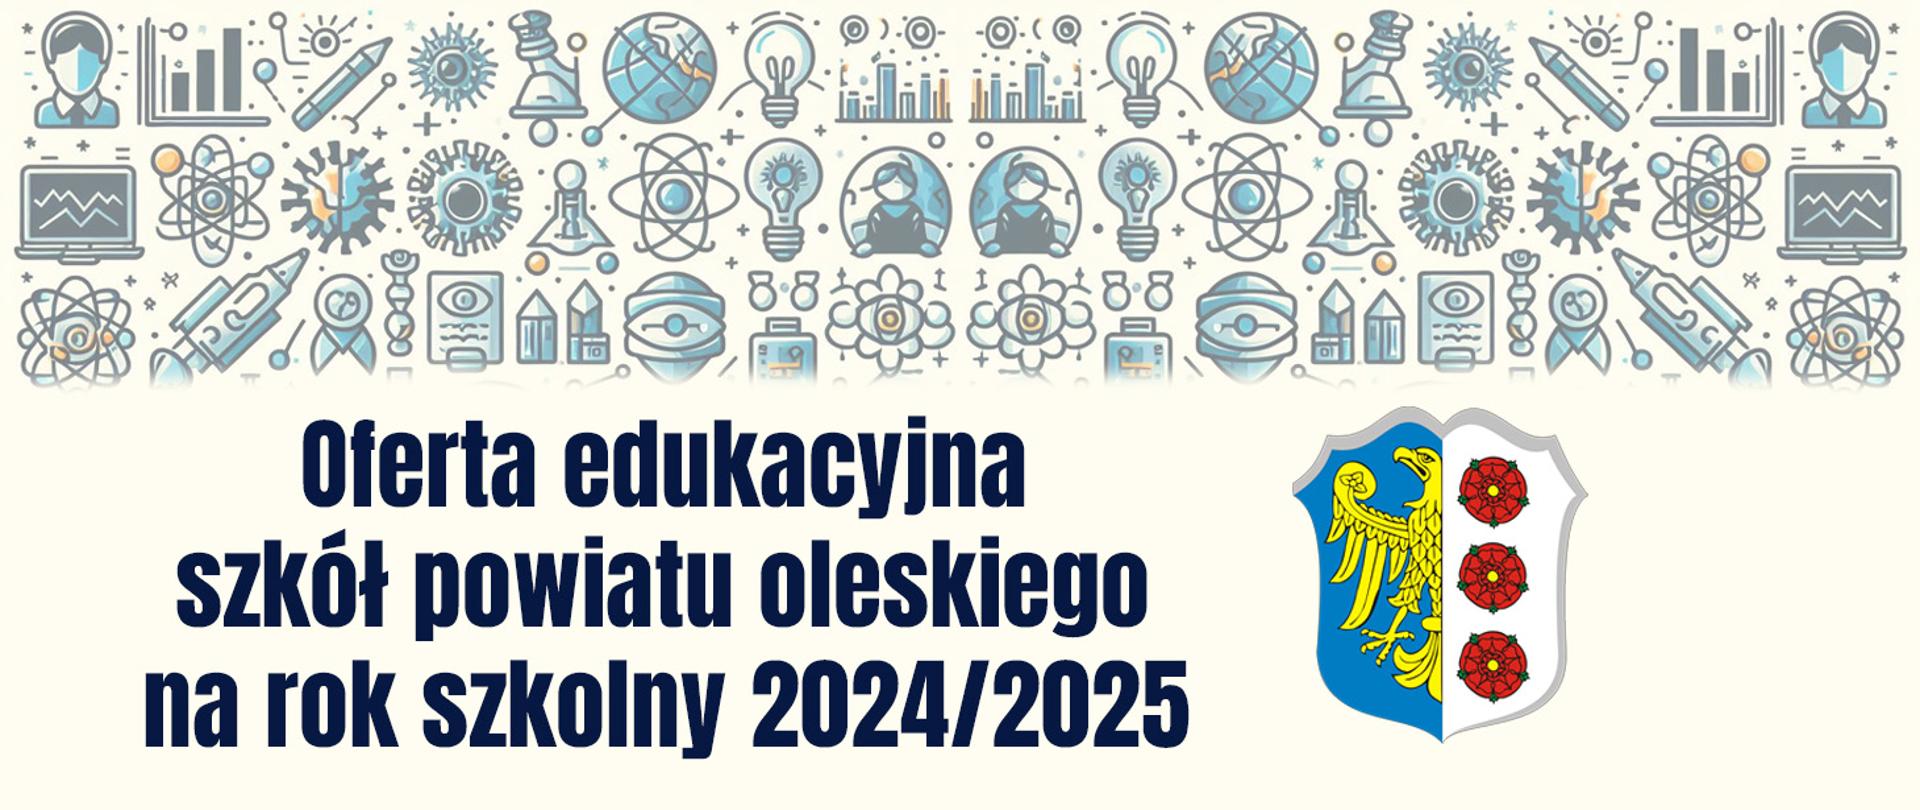 oferta edukacyjna szkół powiatu oleskiego na rok szk6olny 2024/2025